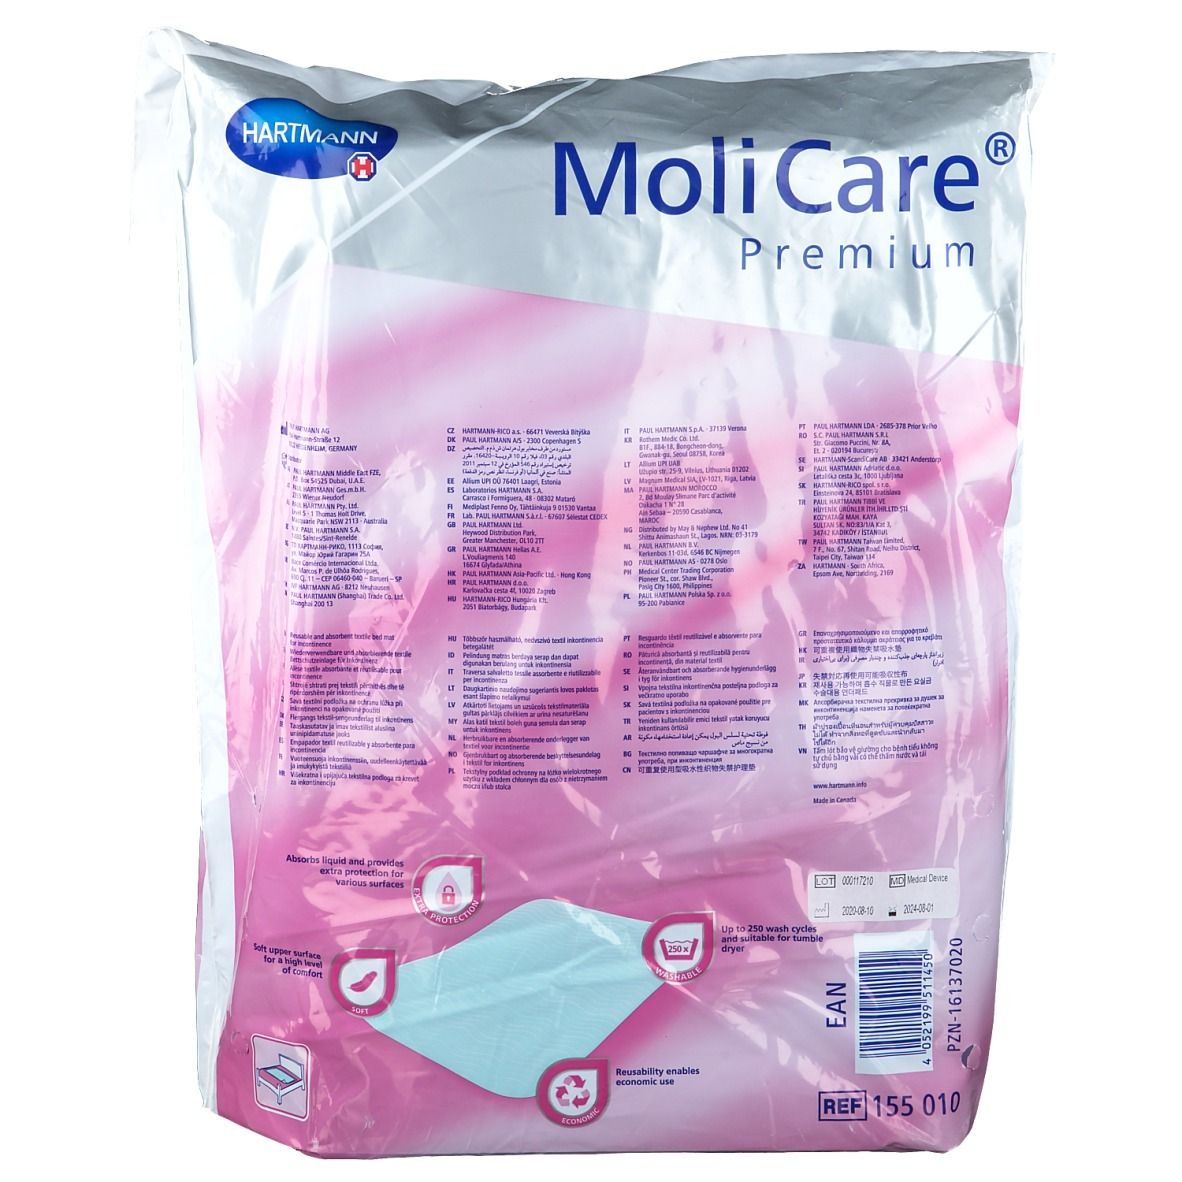 MoliCare® Premium Bed Mat Textile 85 x 90 cm